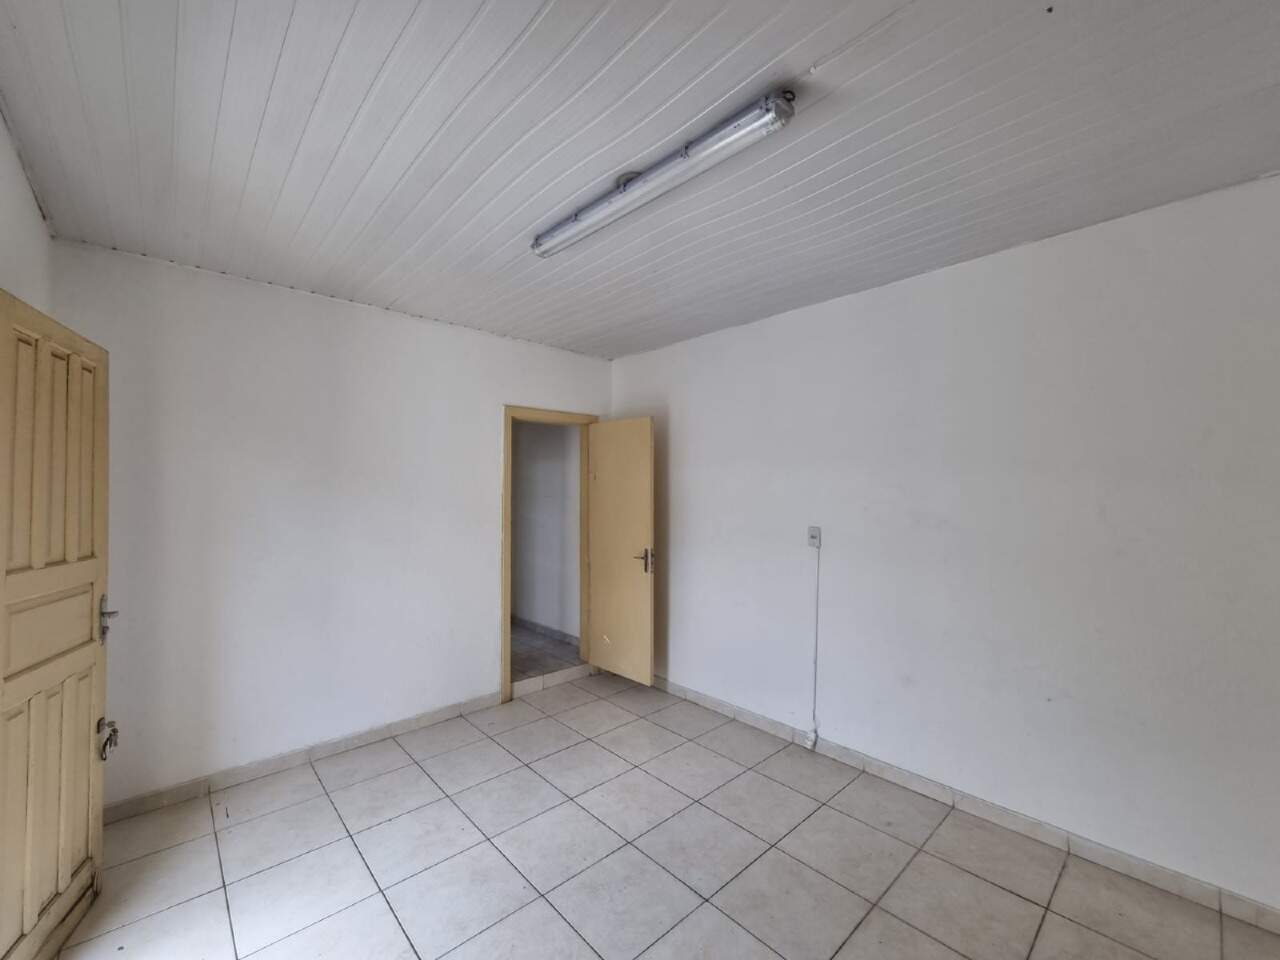 Imagem do imóvel Casa para aluguel, 1 quarto, Salgado Filho - Belo Horizonte/MG